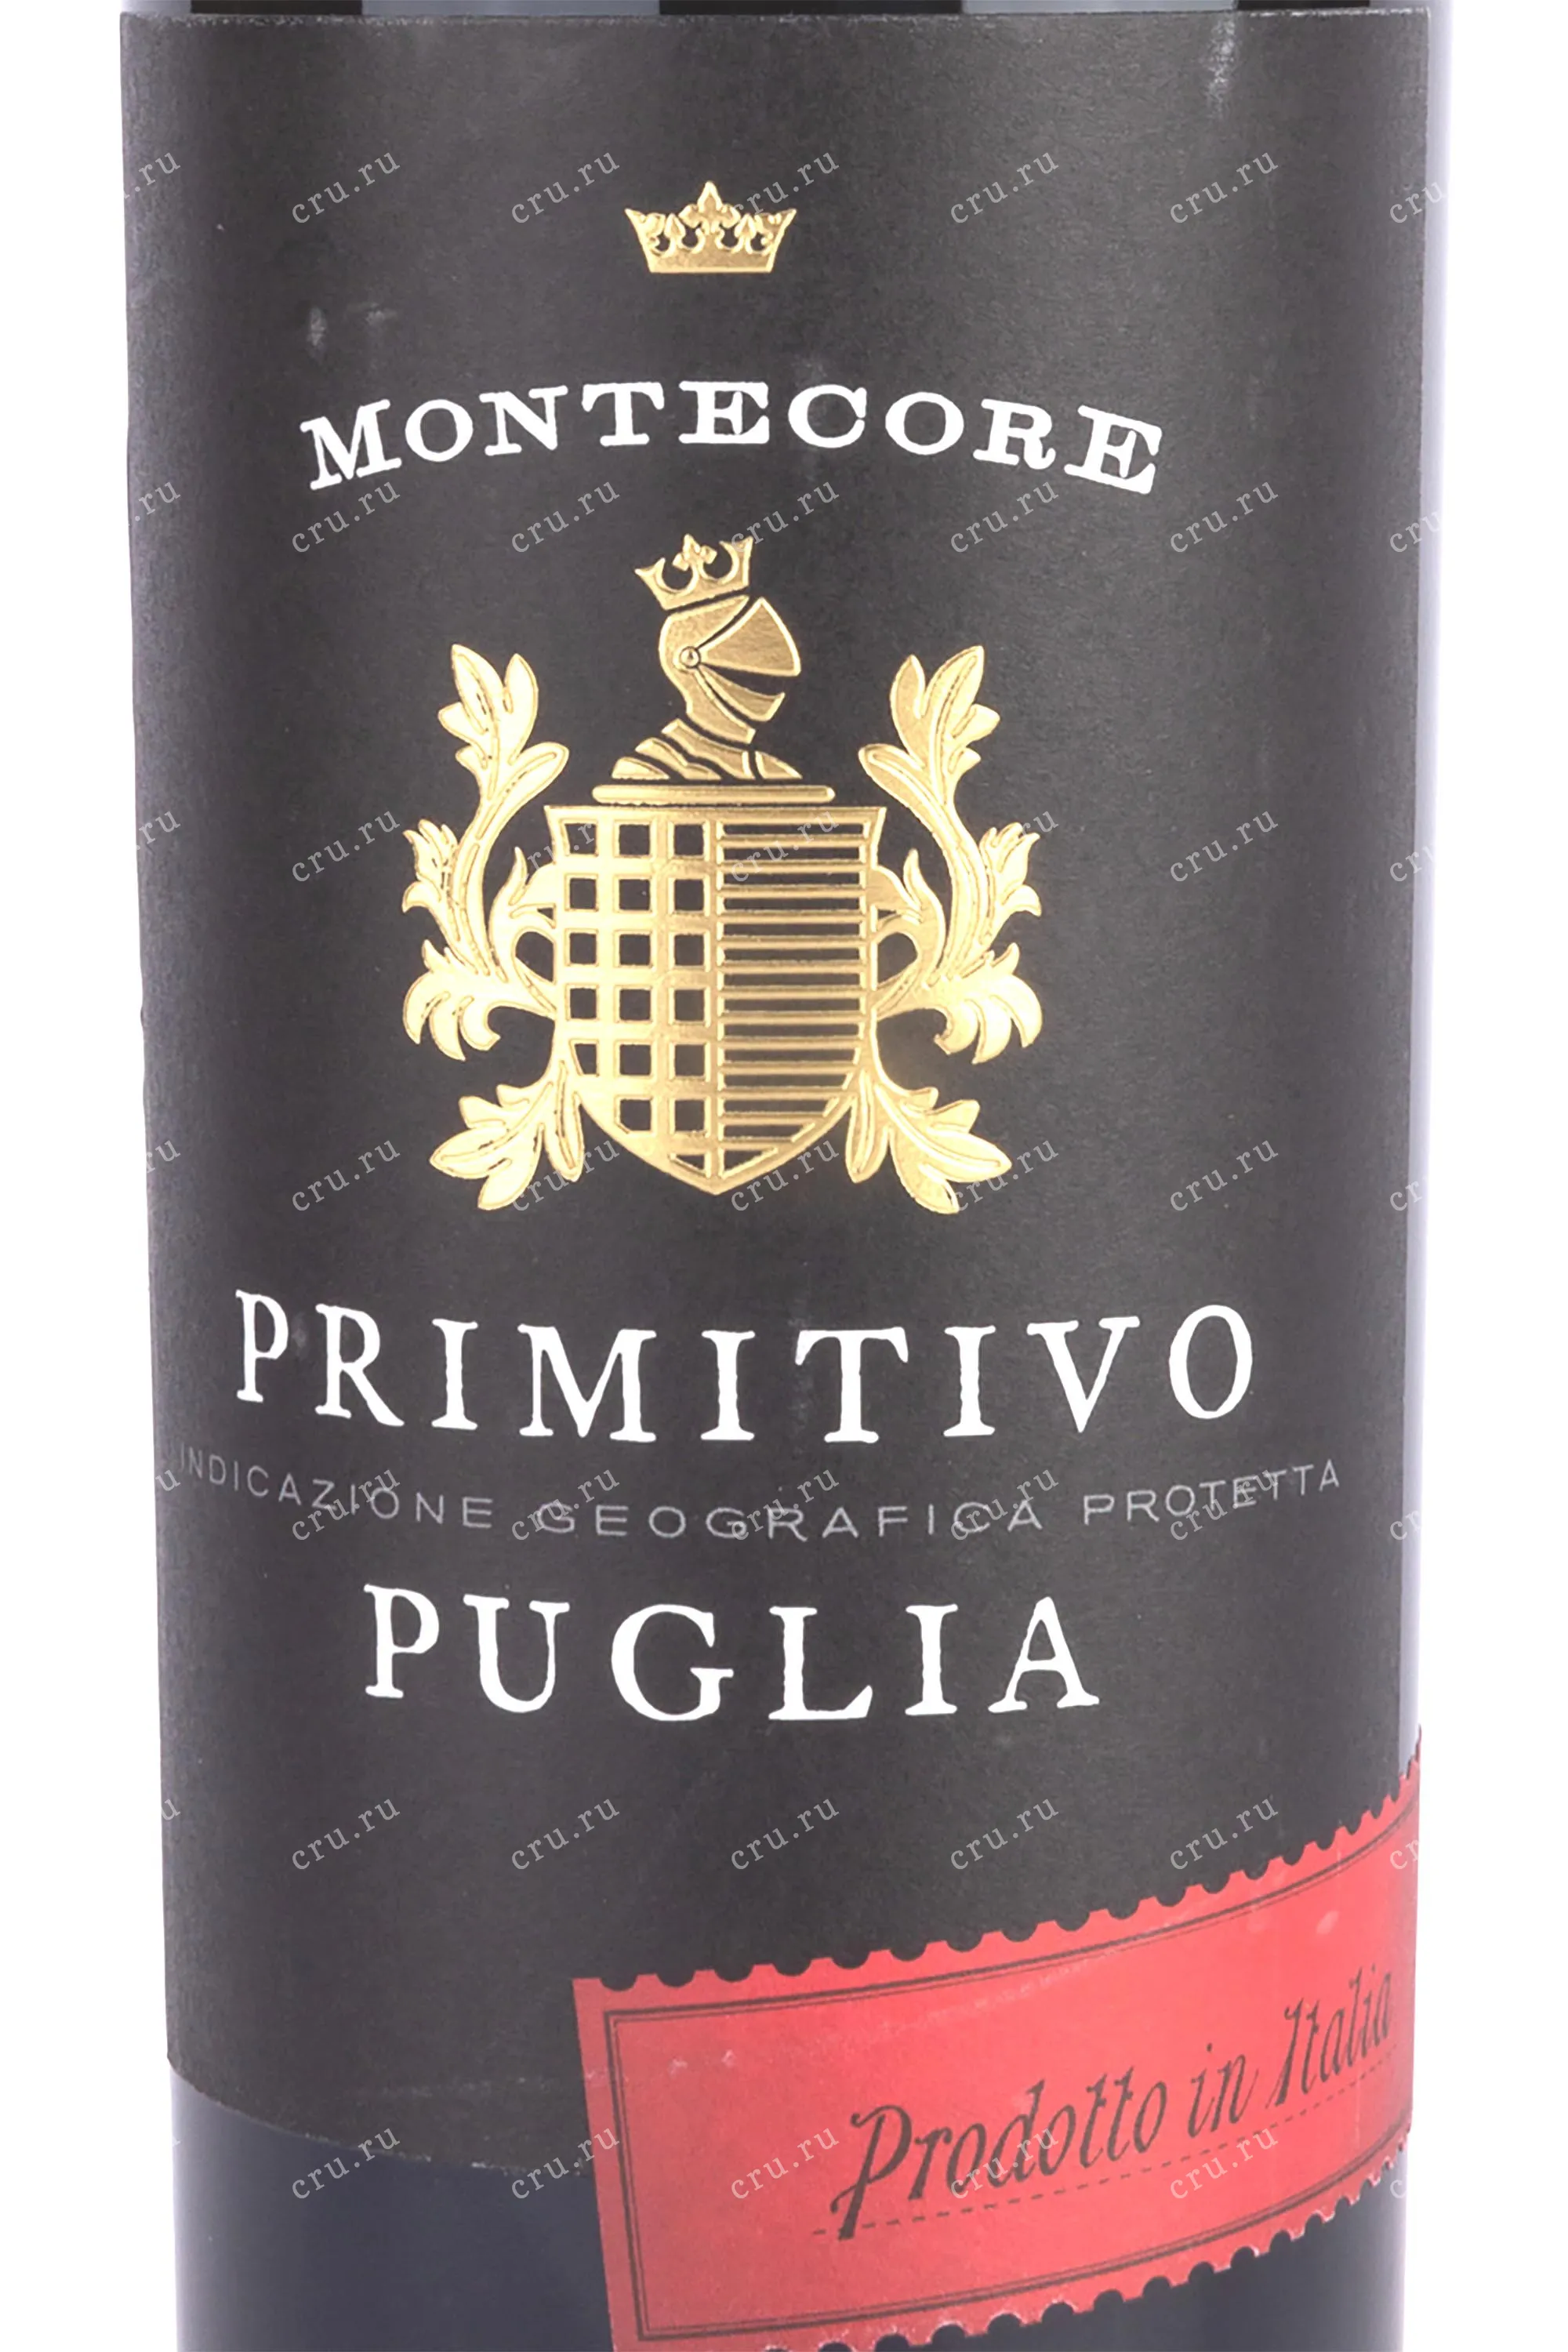 Primitivo Puglia Montecore 0.75 Монтекоре Итальянское в Пулия Примитиво - магазине вино цена л купить